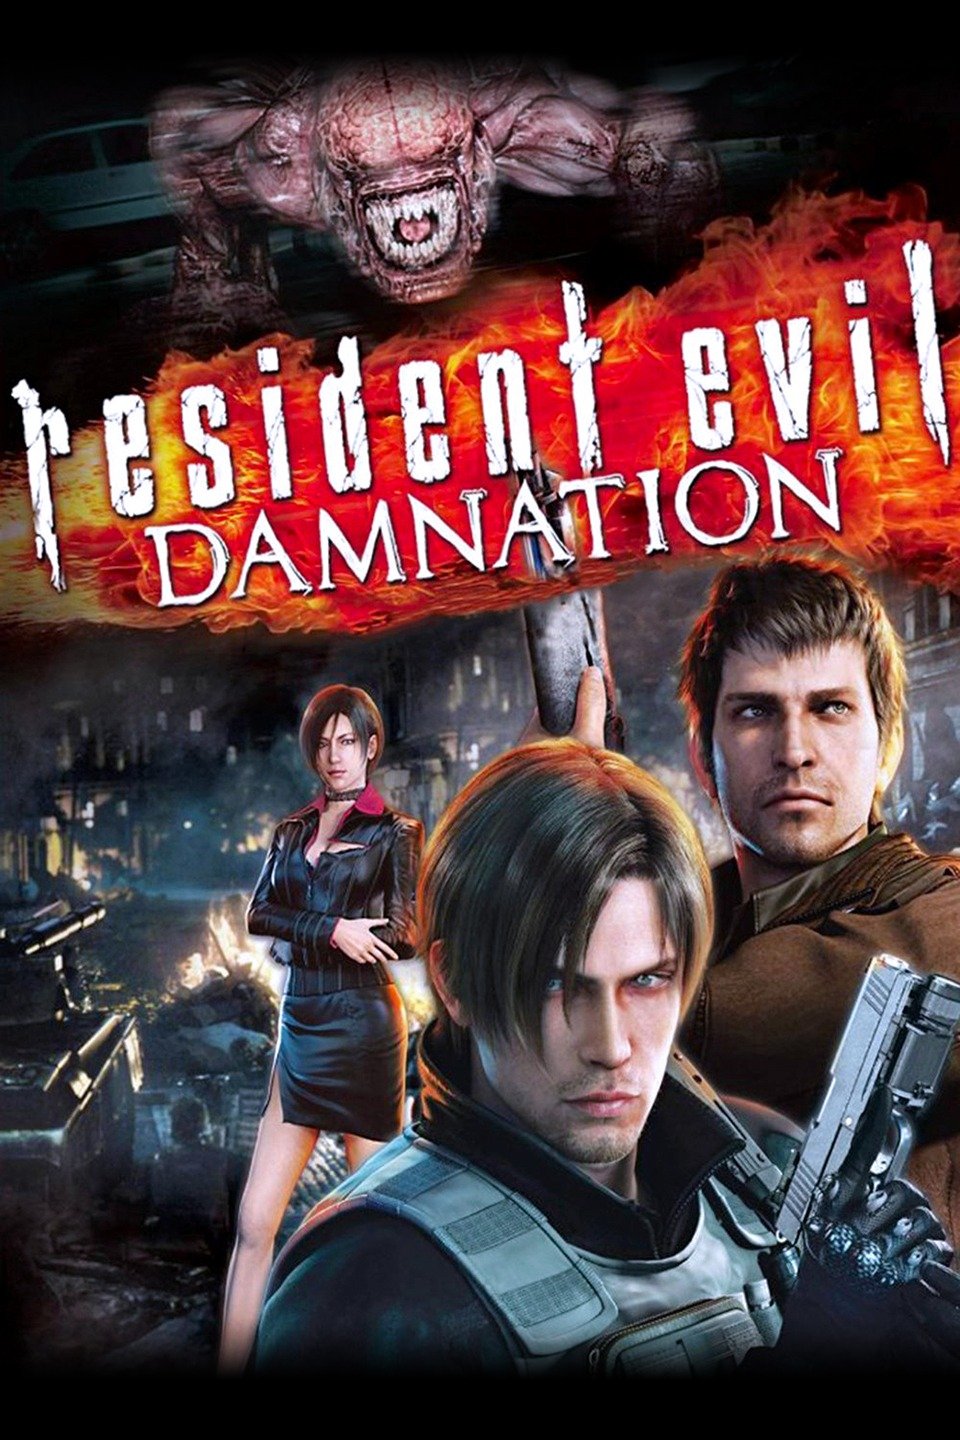 [MINI-HD] Resident Evil: Damnation (2012) ผีชีวะ: สงครามดับพันธุ์ไวรัส [1080p] [พากย์ไทย 2.0 + เสียงอังกฤษ 5.1] [บรรยายไทย + อังกฤษ] [เสียงไทย + ซับไทย] [OPENLOAD]